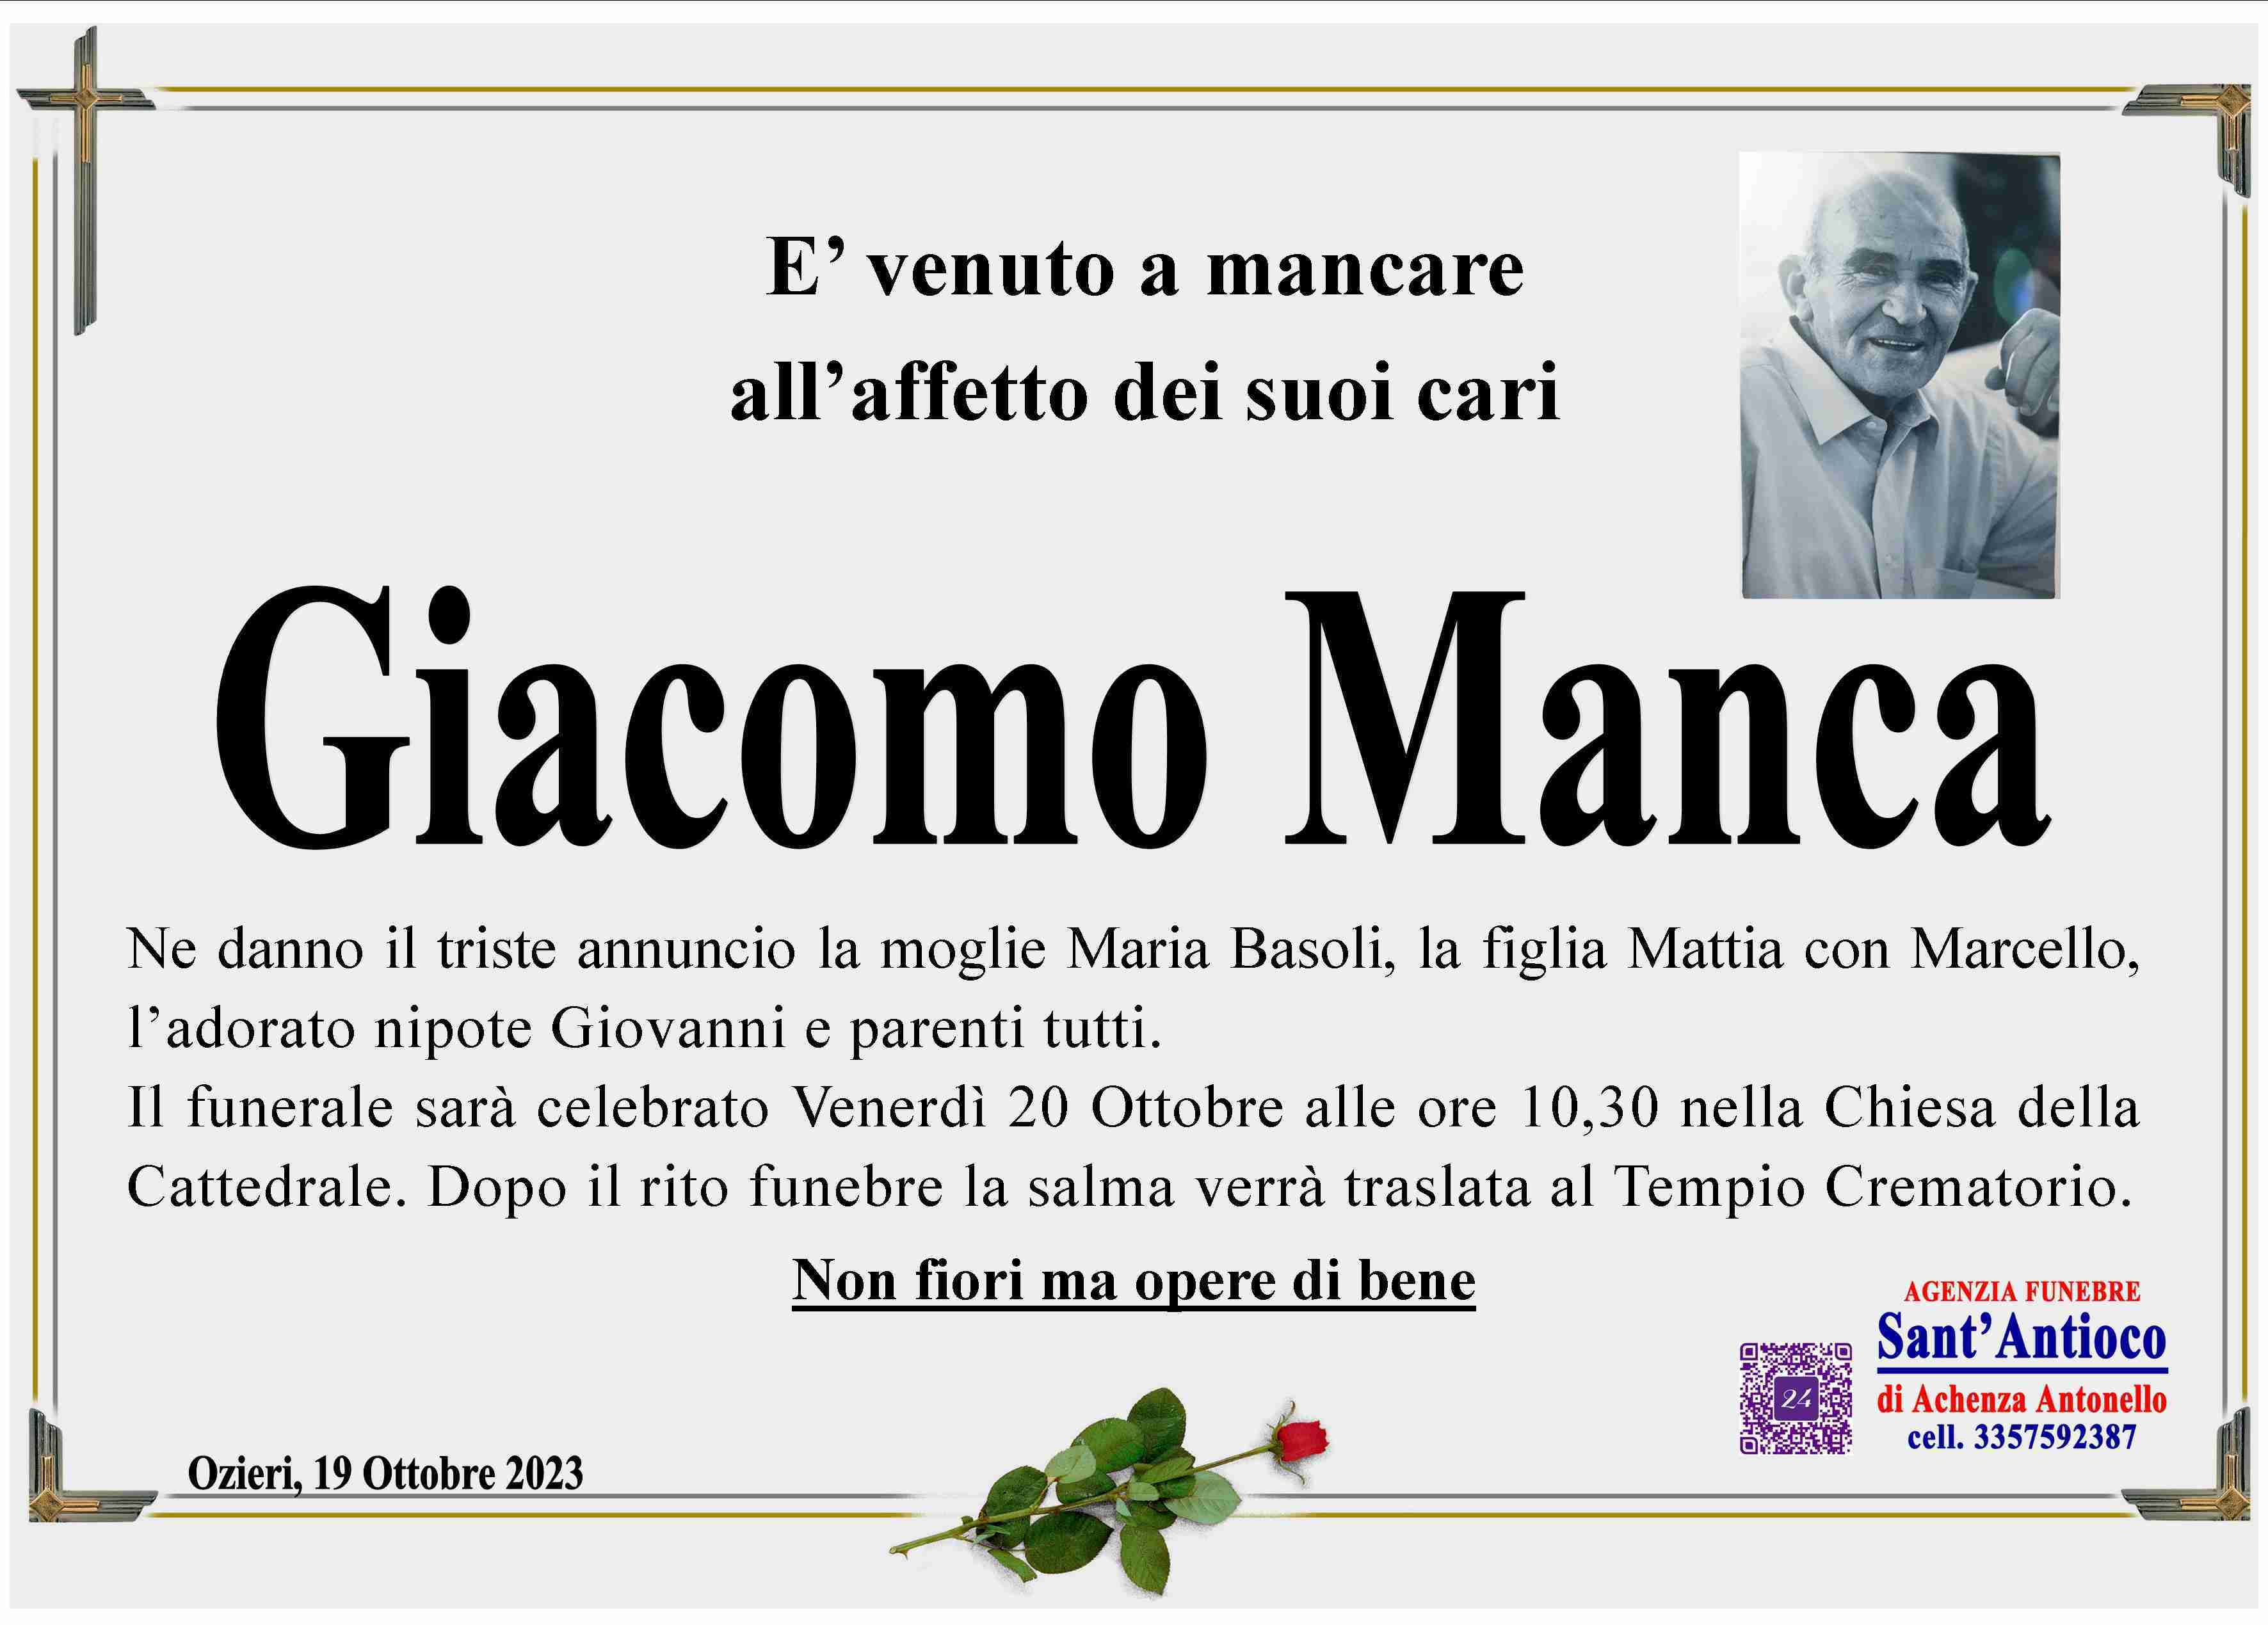 Giacomo Manca